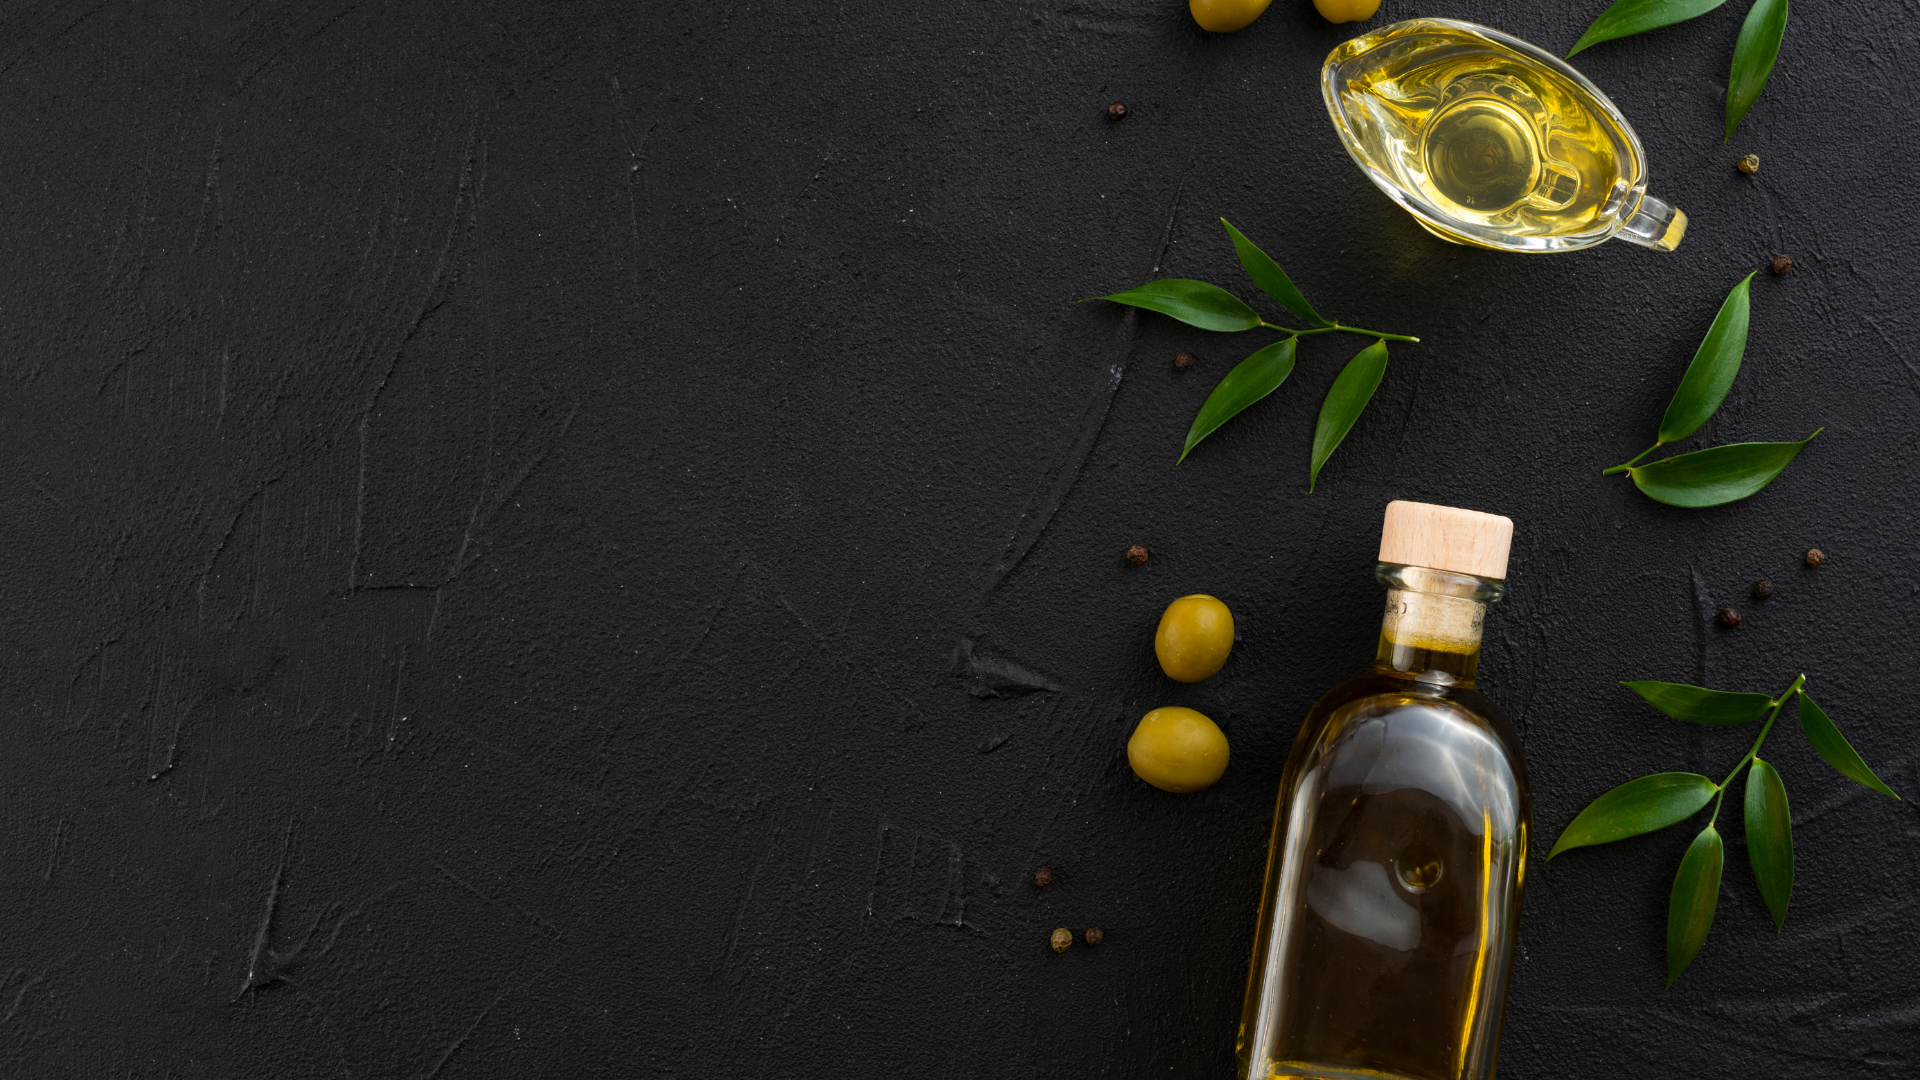 Foto de capa do artigo "6 benefícios do azeite de oliva para a saúde"